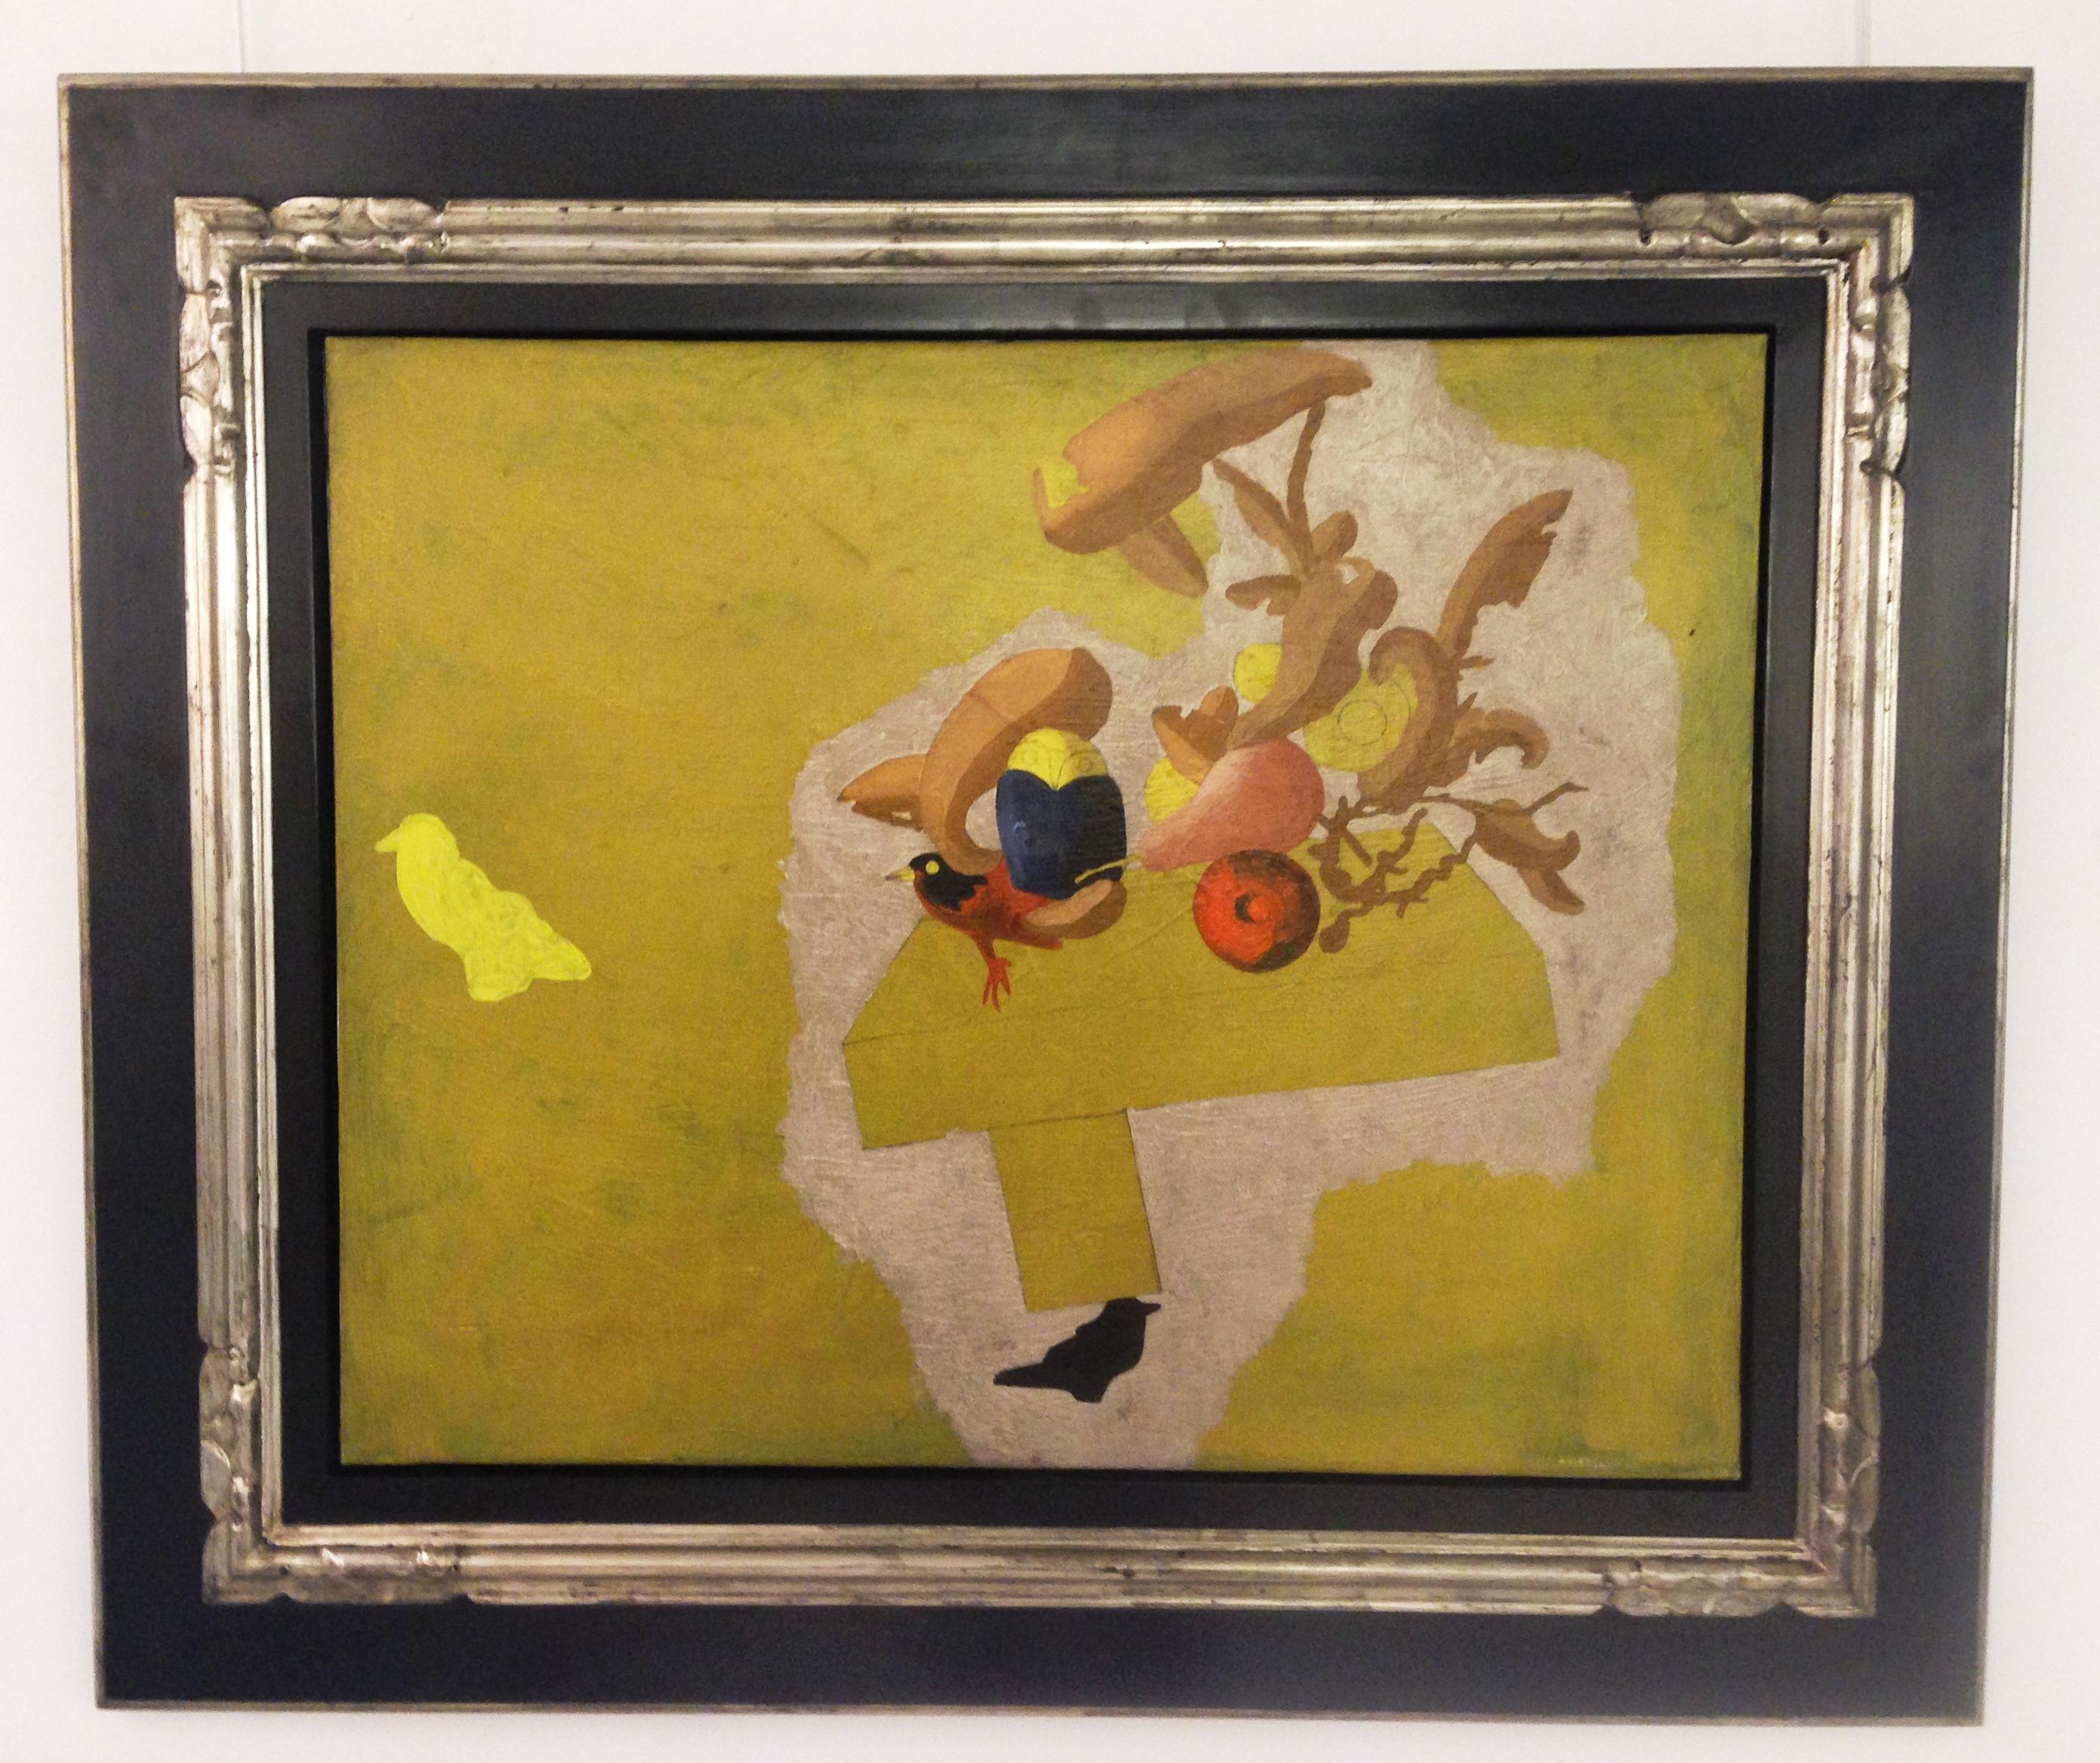 Abstract Painting Jorge Castillo Casalderrey - Jorge Castillo  Surréaliste jaune doré. Toile acrylique abstraite originale de 1985 